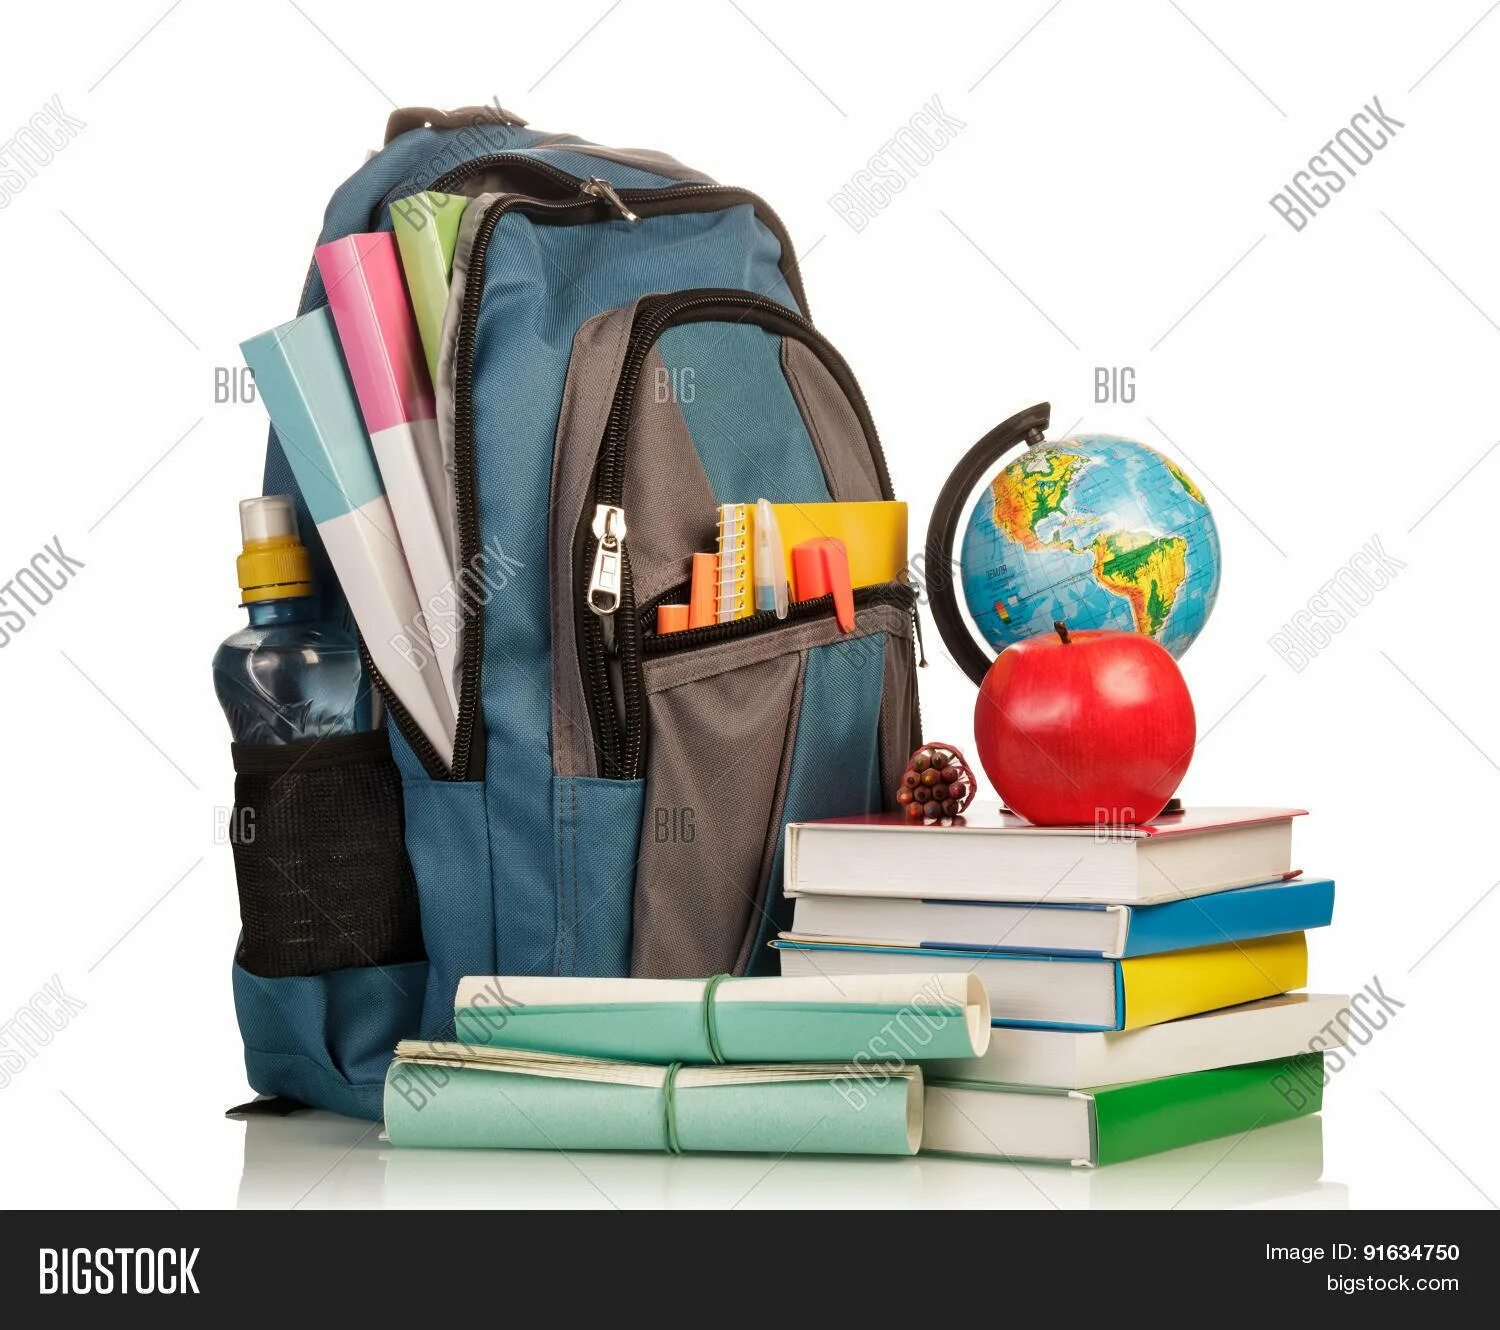 Красивее портфель хвоя средства поставь. Рюкзак со школьными принадлежностями. Школьник с рюкзаком. Школьный рюкзак с учебниками. Портфель с канцтоварами.